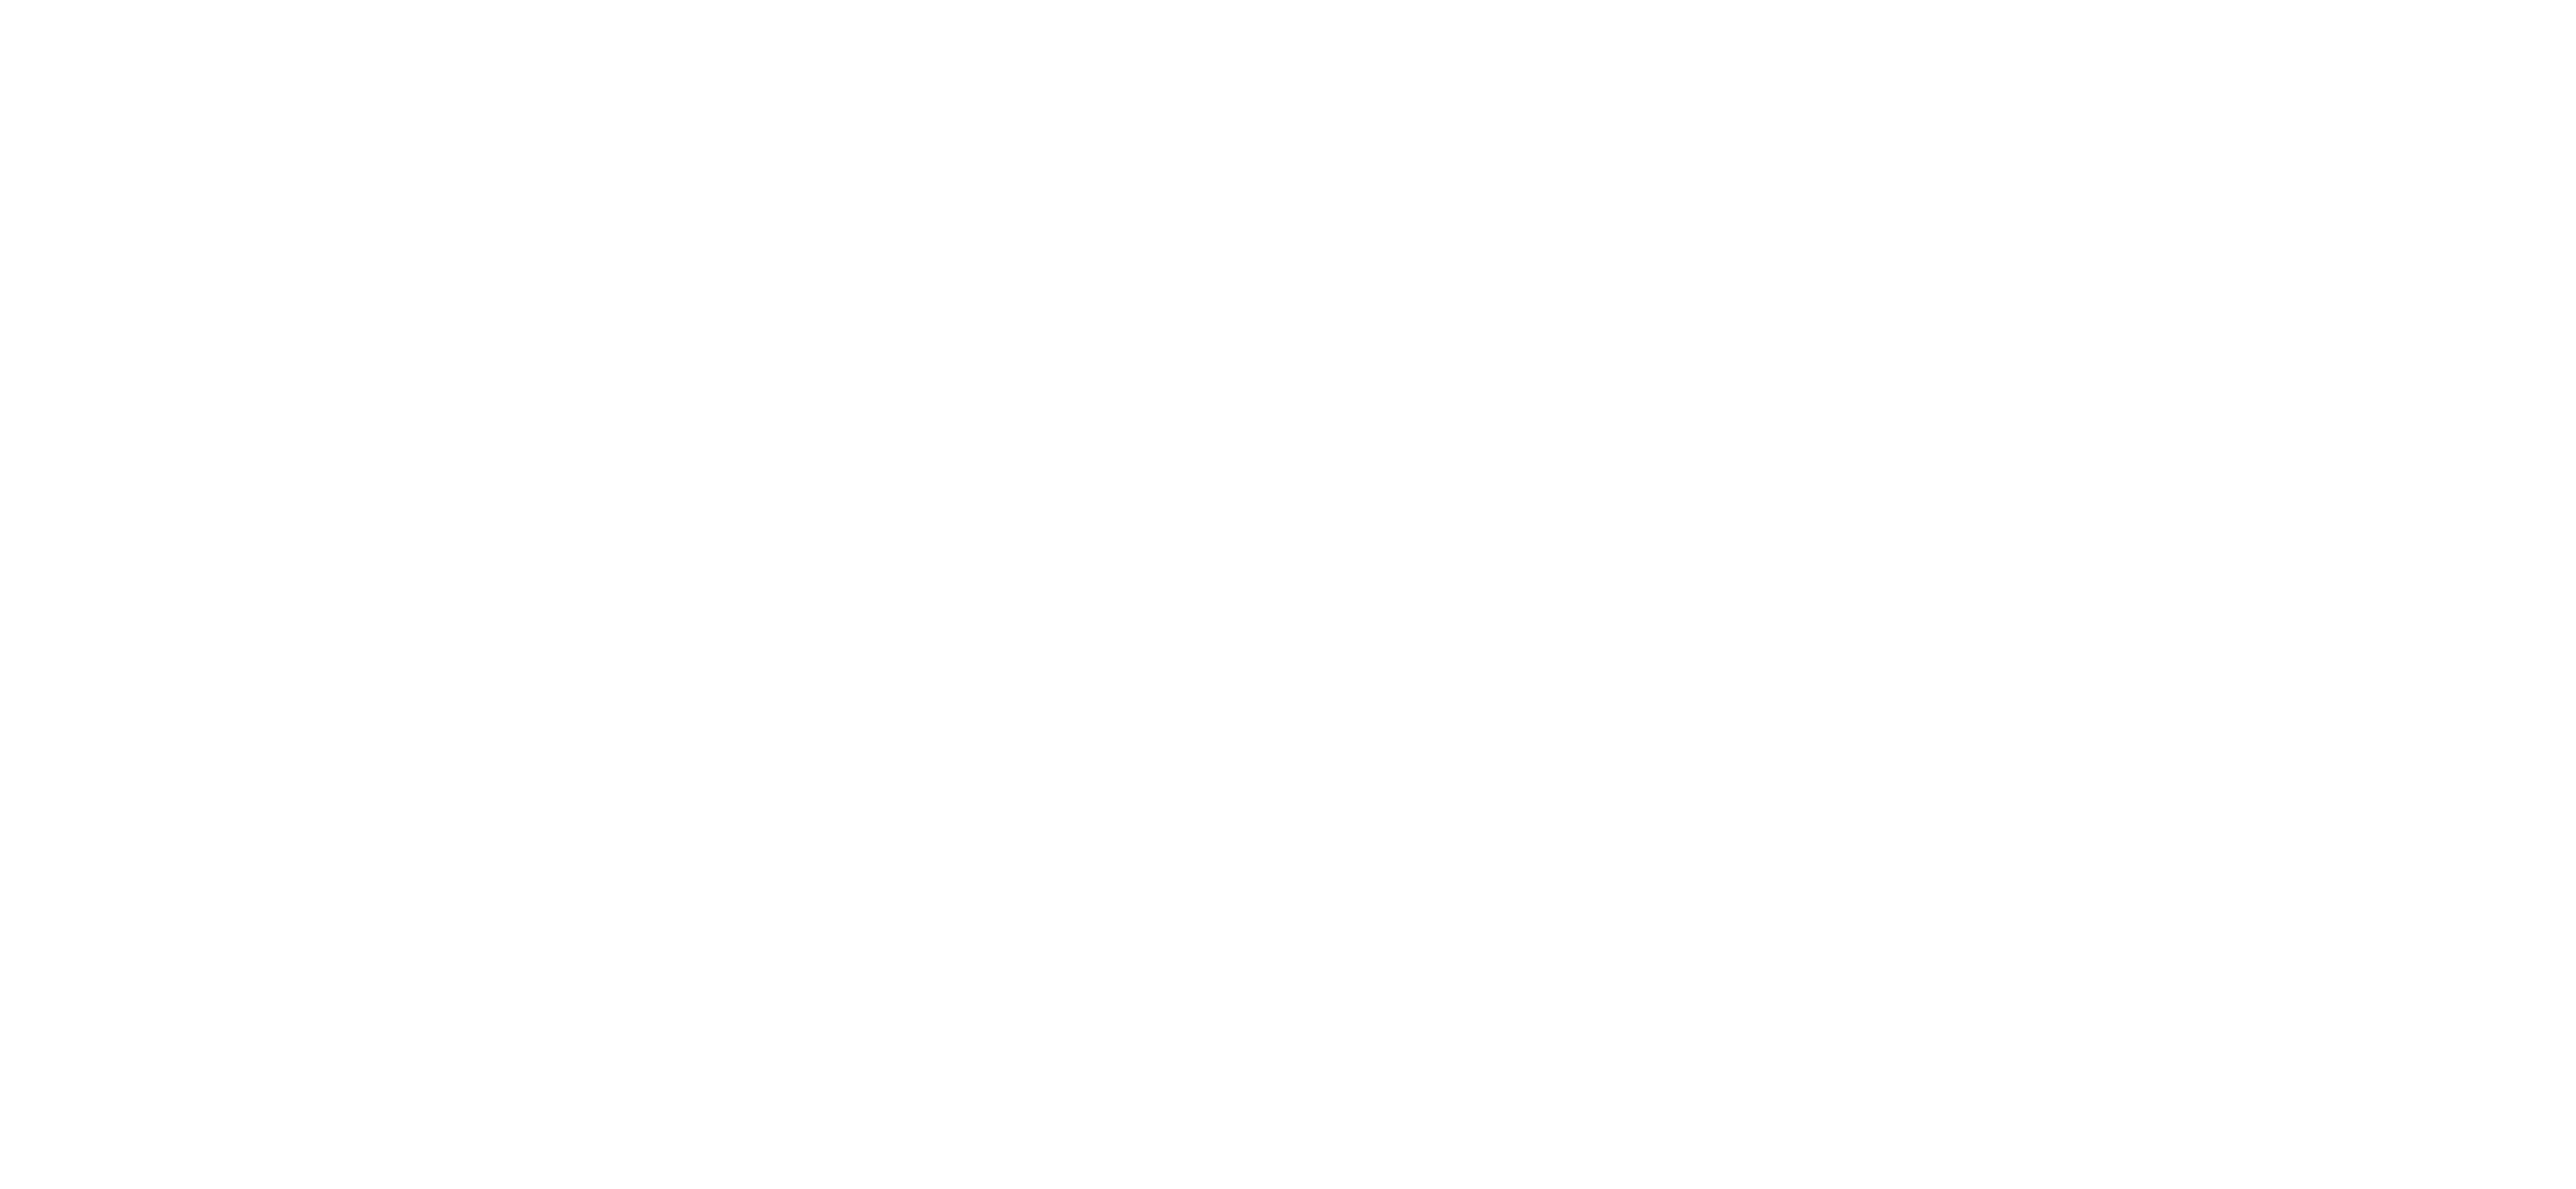 e-learning for healthcare logo